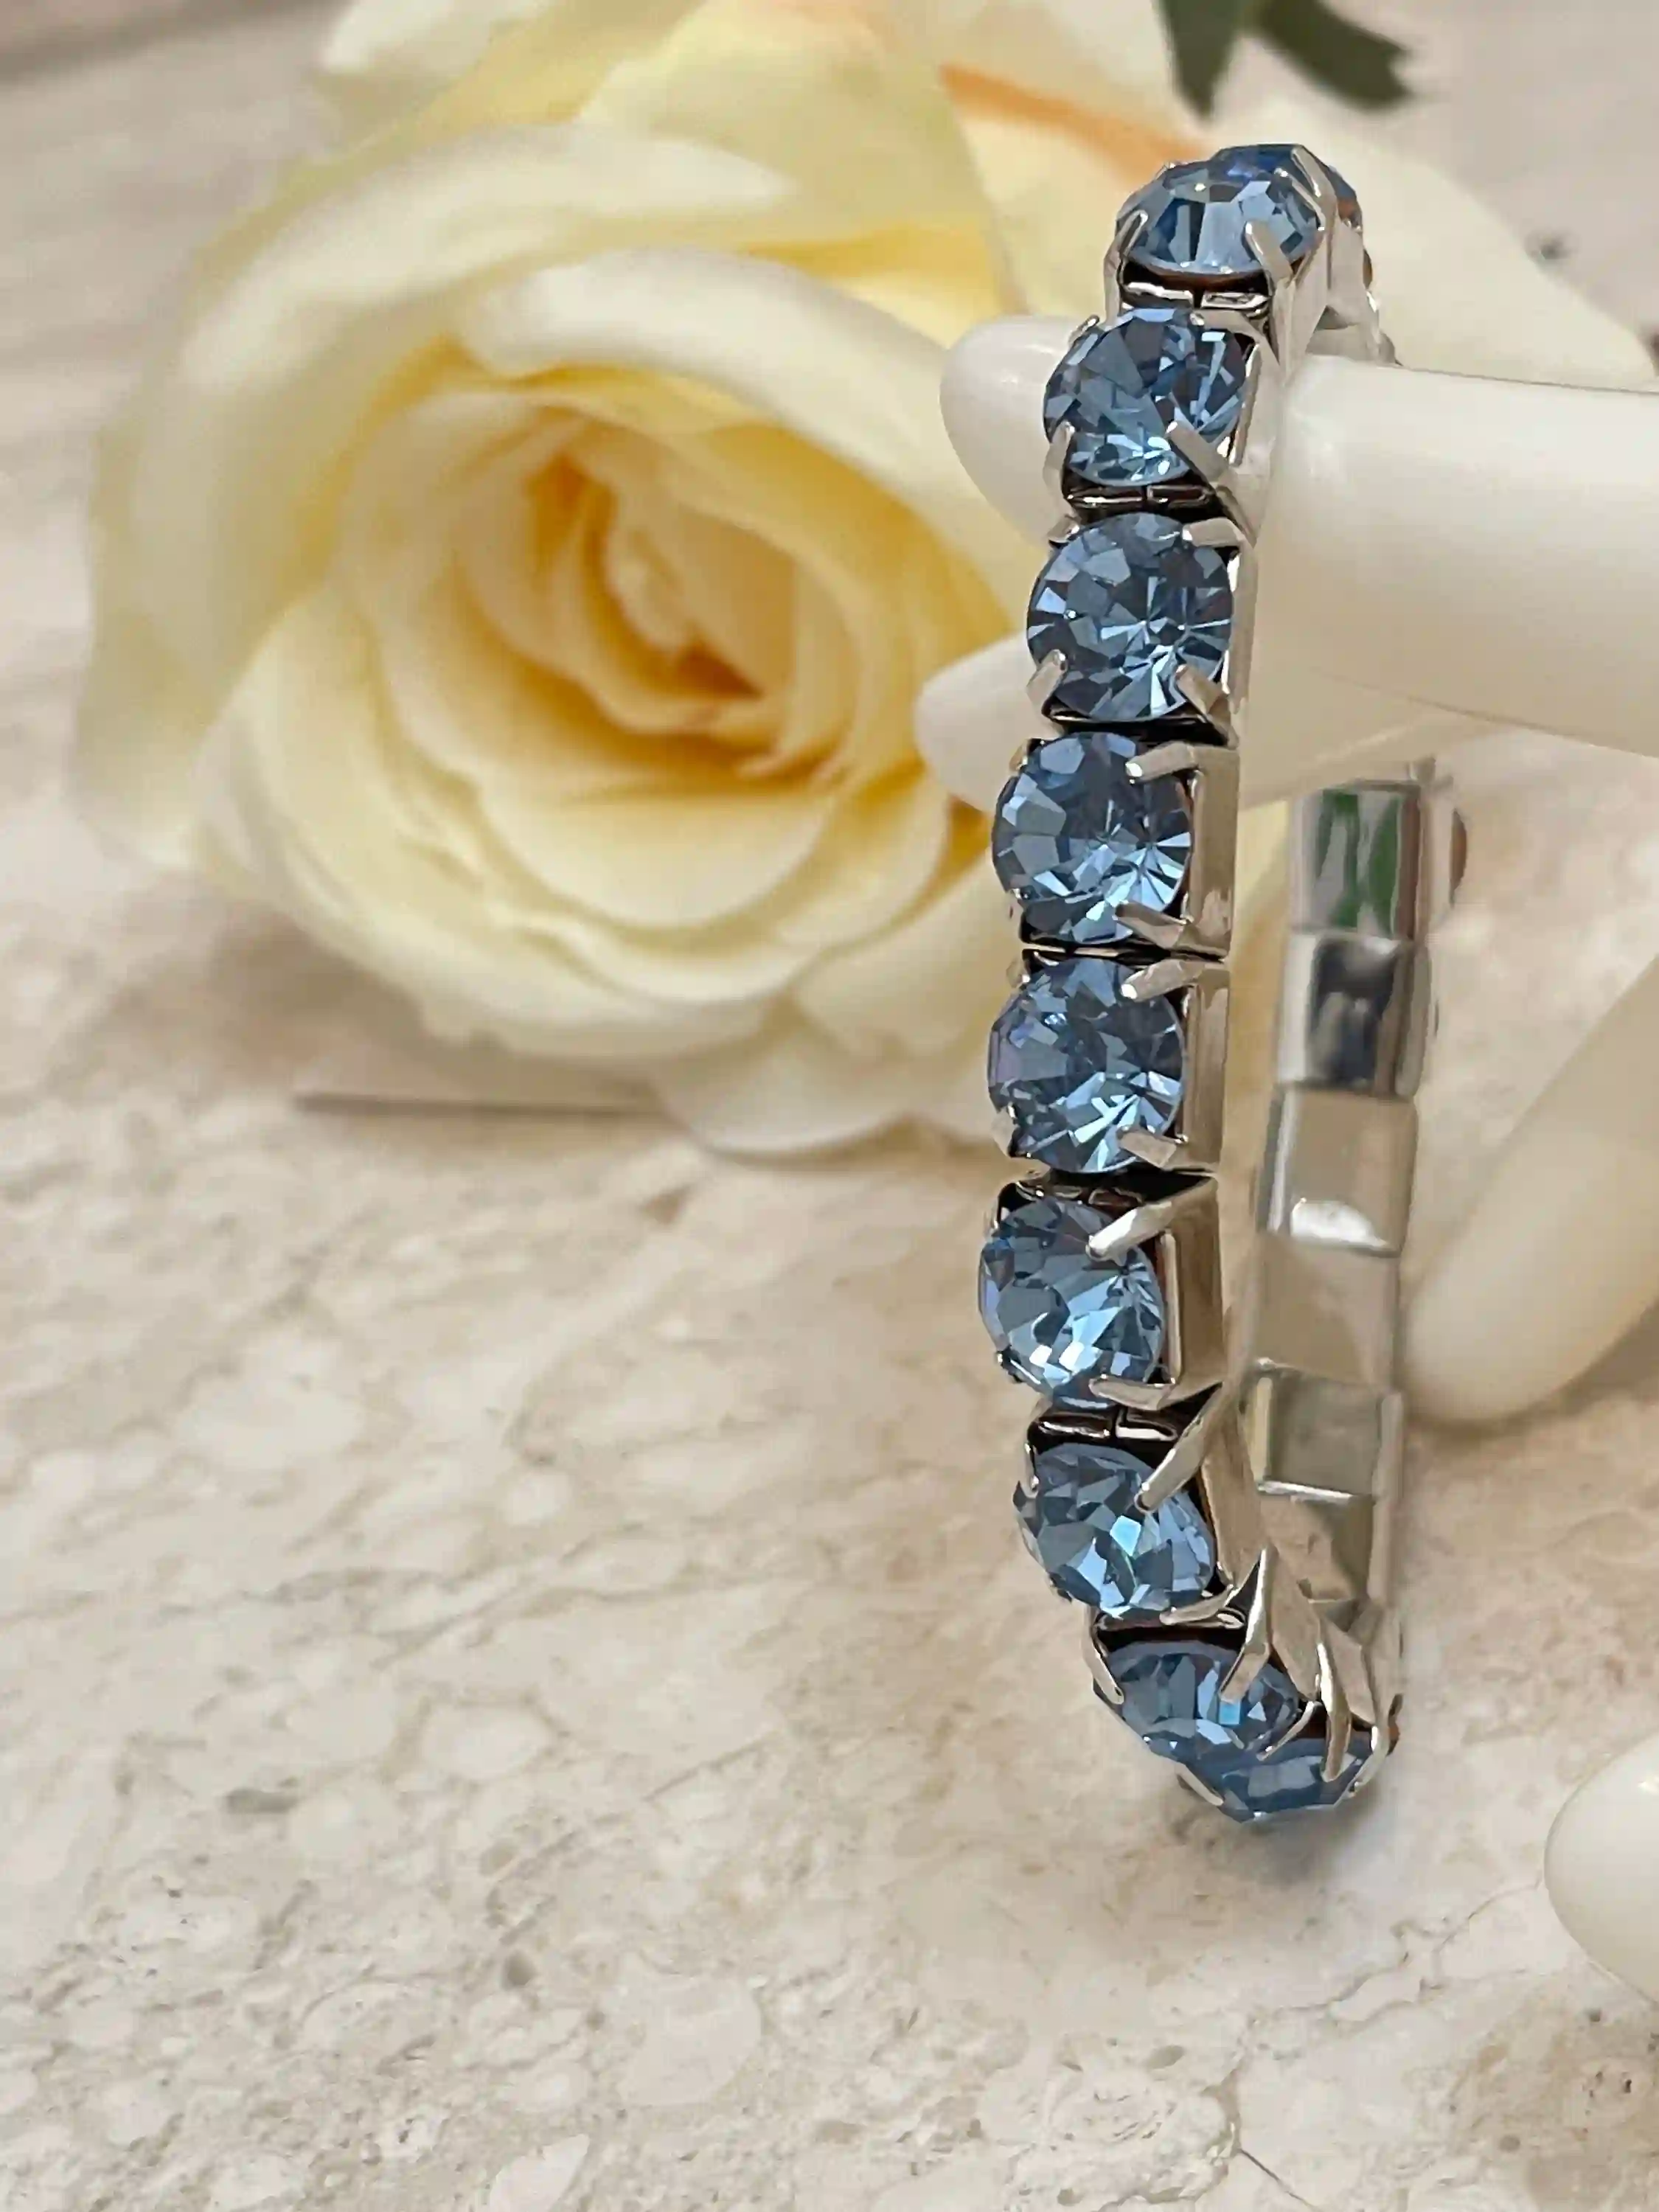 Blue Topaz Bracelet - Tennis Bracelet - Silver Gemstone Bracelet - Blue Topaz Jewelry - Birthstone bracelet - Dainty Bracelet - Gift for her 